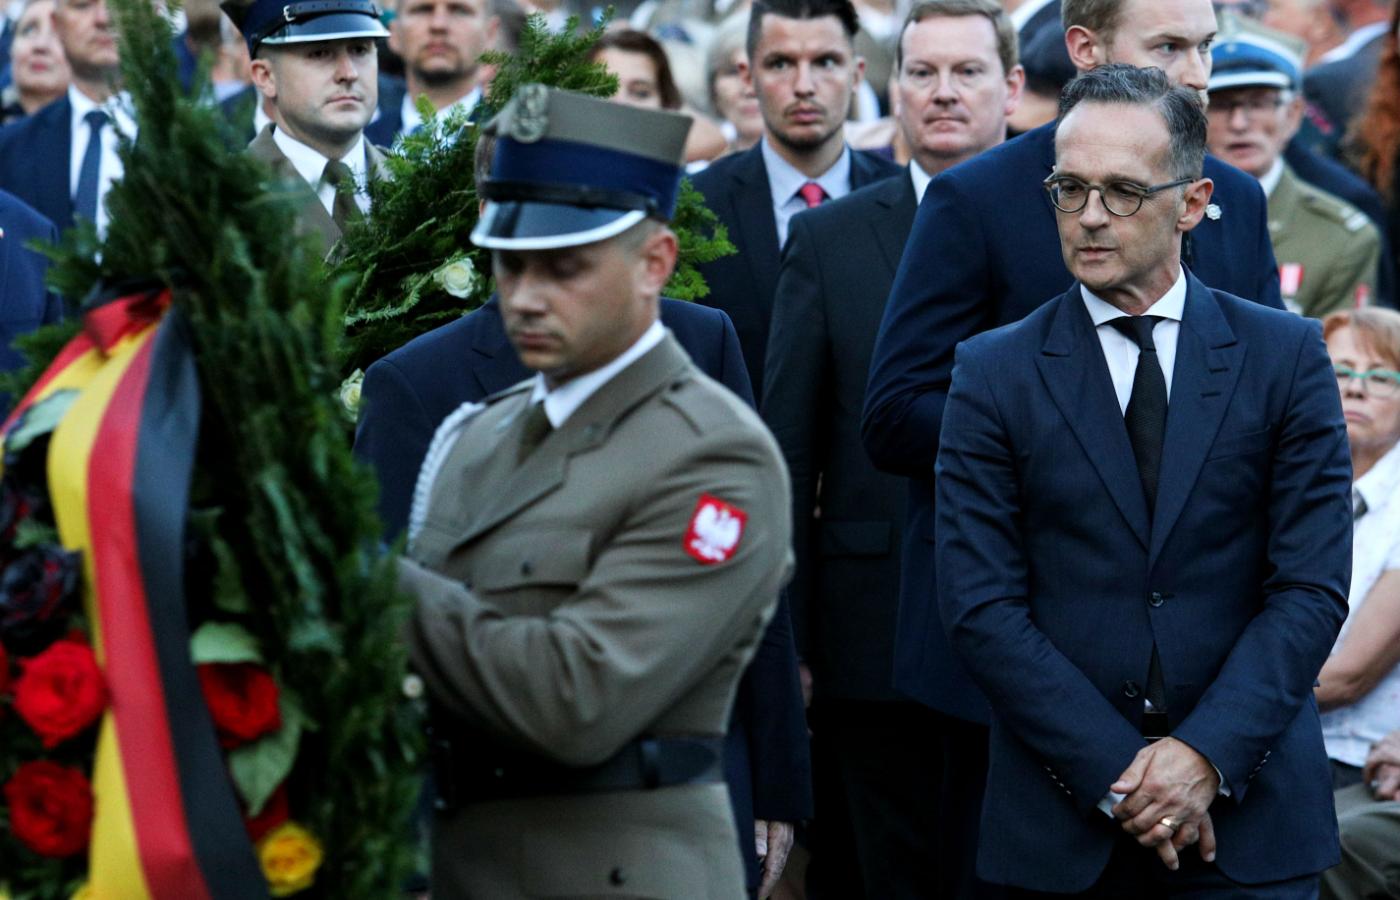 Niemiecki szef dyplomacji Heiko Maas podczas obchodów 75. rocznicy wybuchu powstania warszawskiego